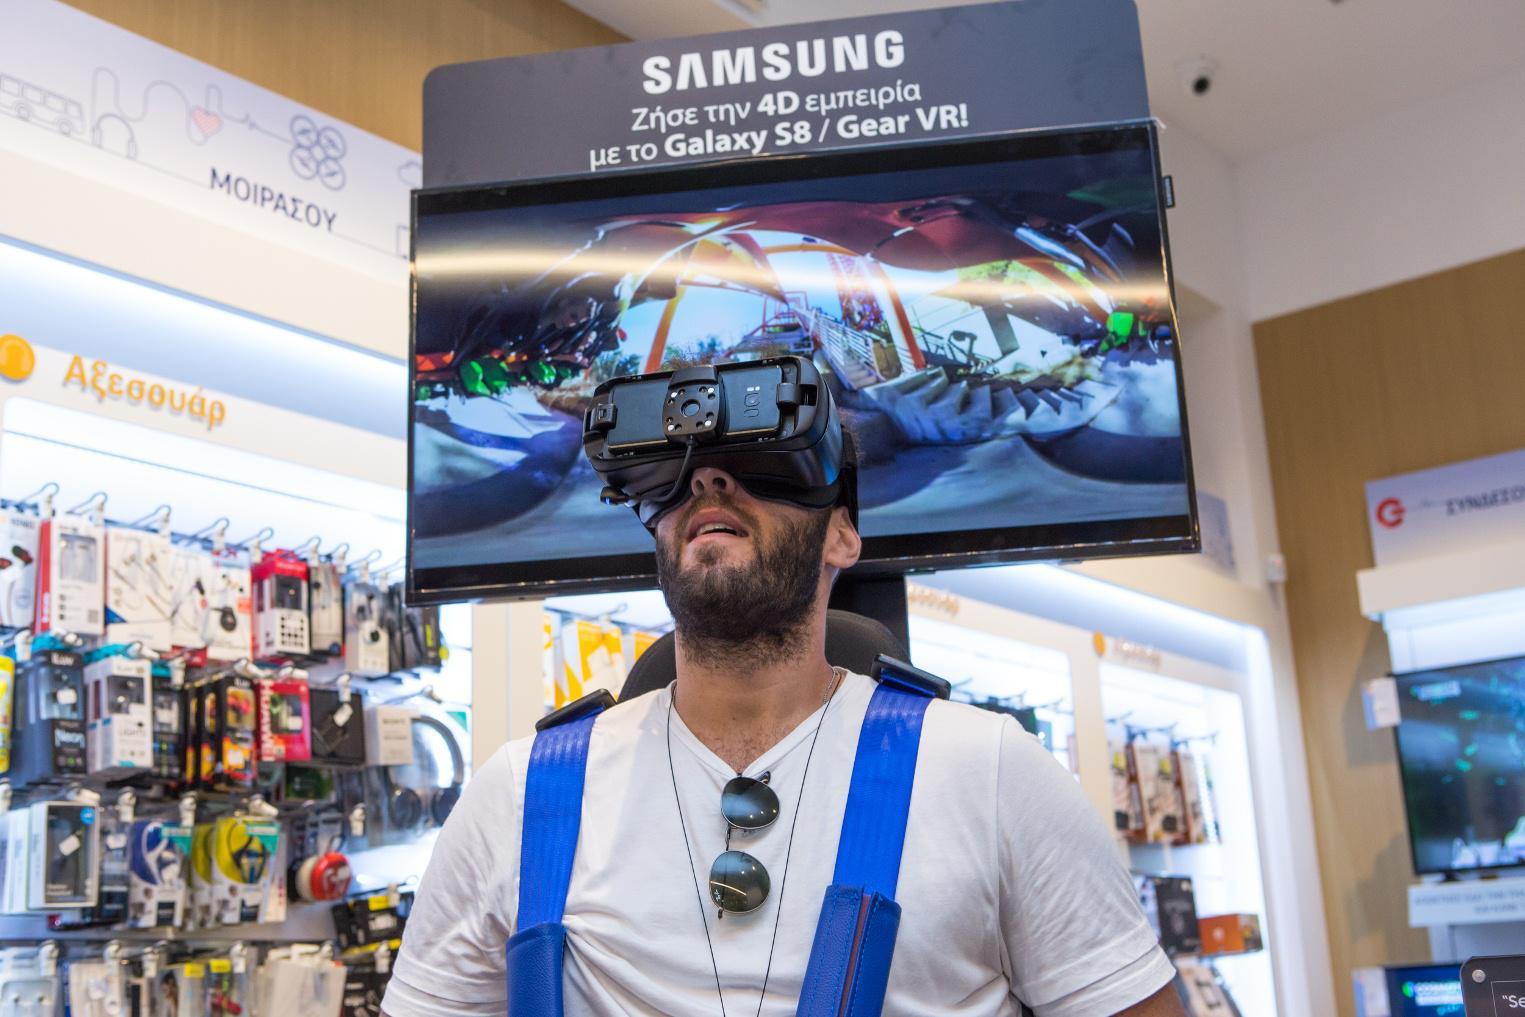 Ο παίκτης της ΚΑΕ Παναθηναϊκός, Νίκος Παππάς δοκιμάζει το Samsung Gear VR στον ΓΕΡΜΑΝΟ